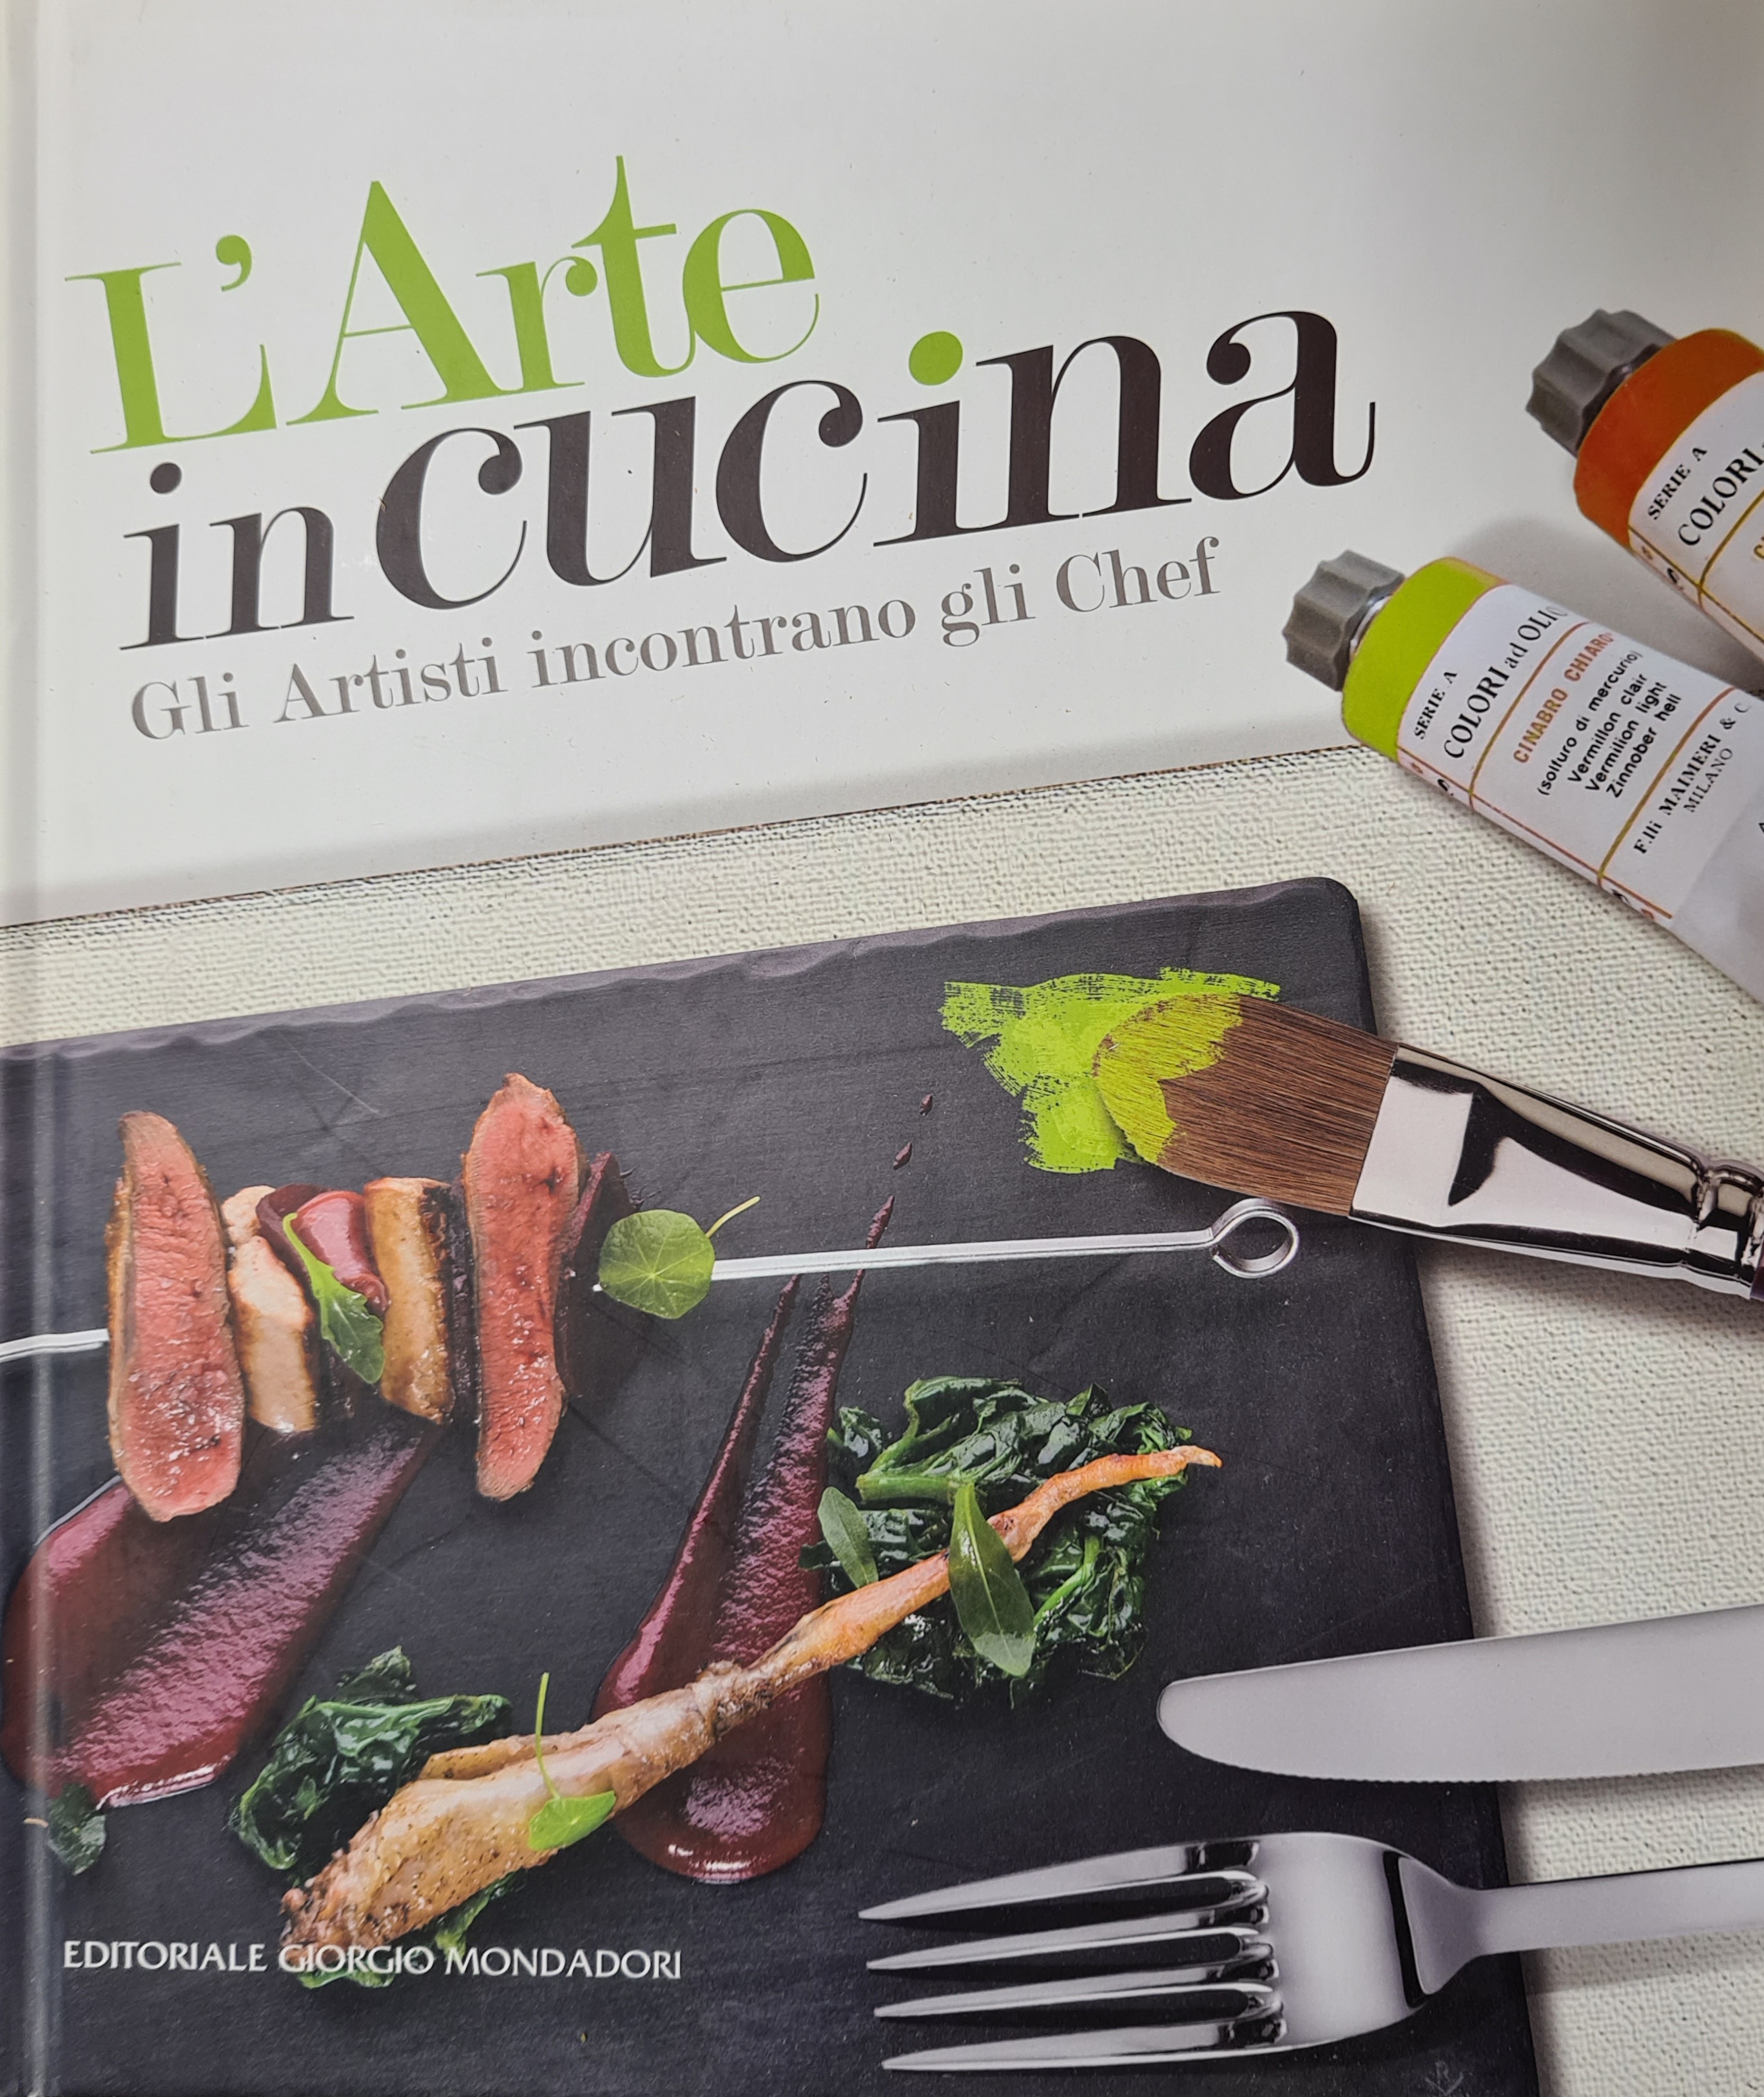 L'arte in cucina, Editoriale Giorgio Mondadori, 2018